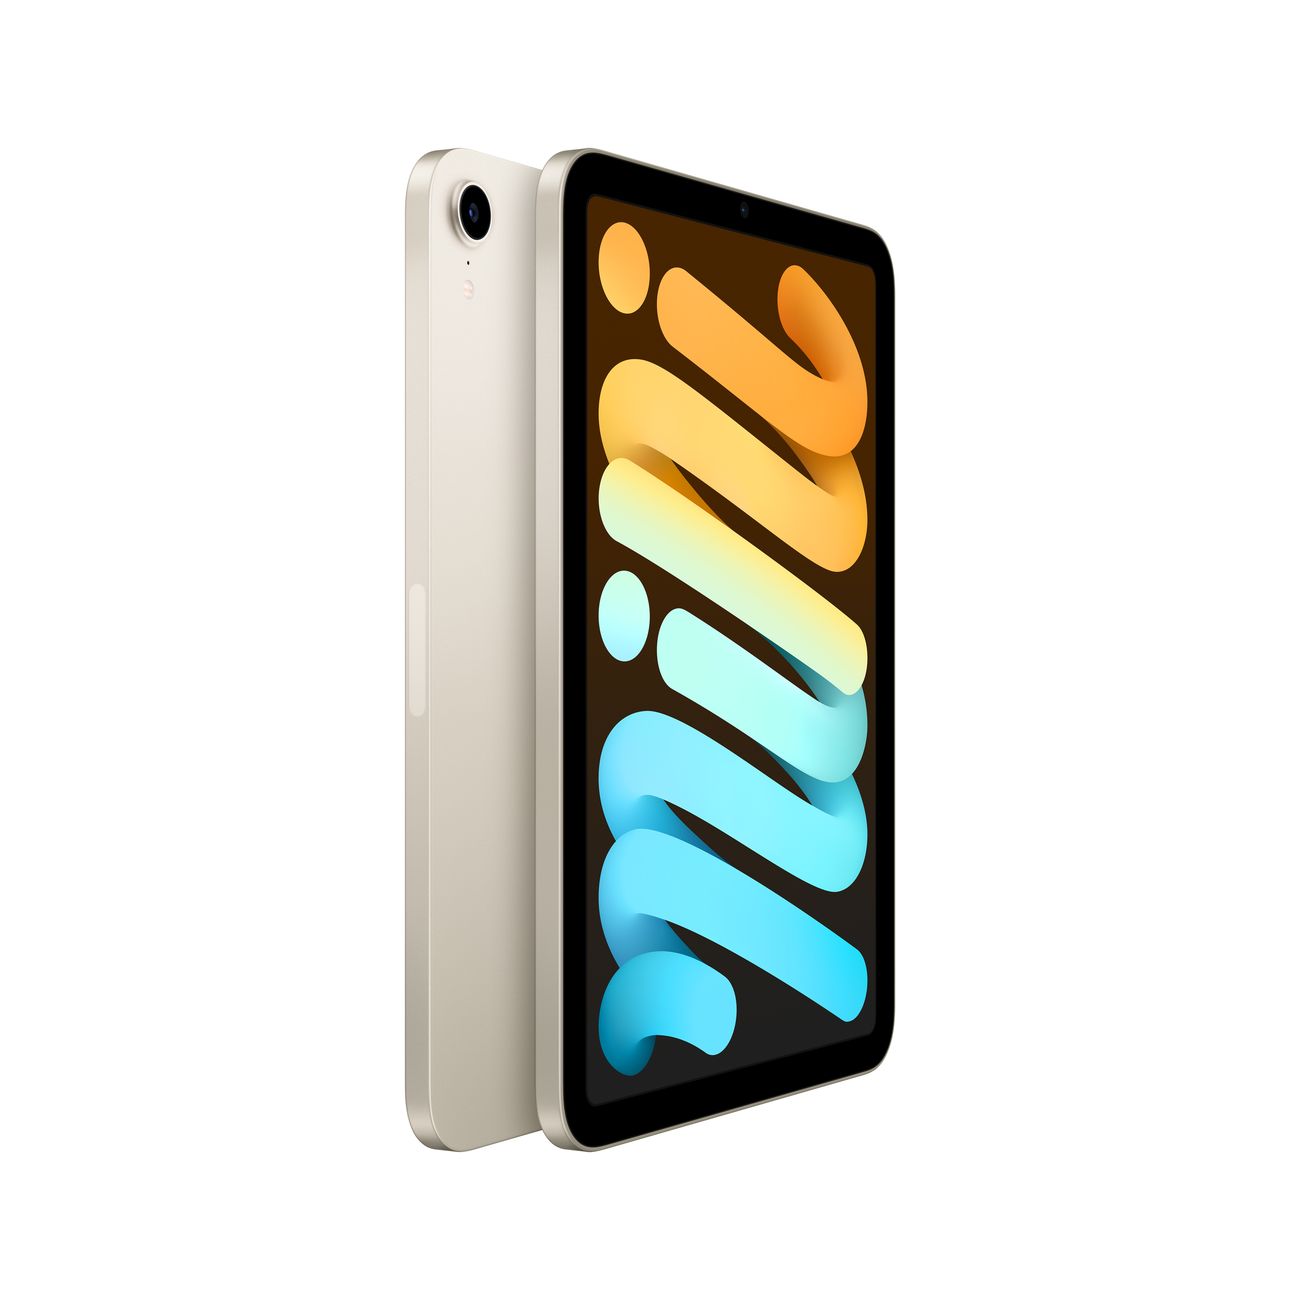 Купить планшет apple ipad mini wi-fi+cell 256gb starlight (mk8h3) Apple iPad mini в официальном магазине Apple, Samsung, Xiaomi. iPixel.ru Купить, заказ, кредит, рассрочка, отзывы,  характеристики, цена,  фотографии, в подарок.